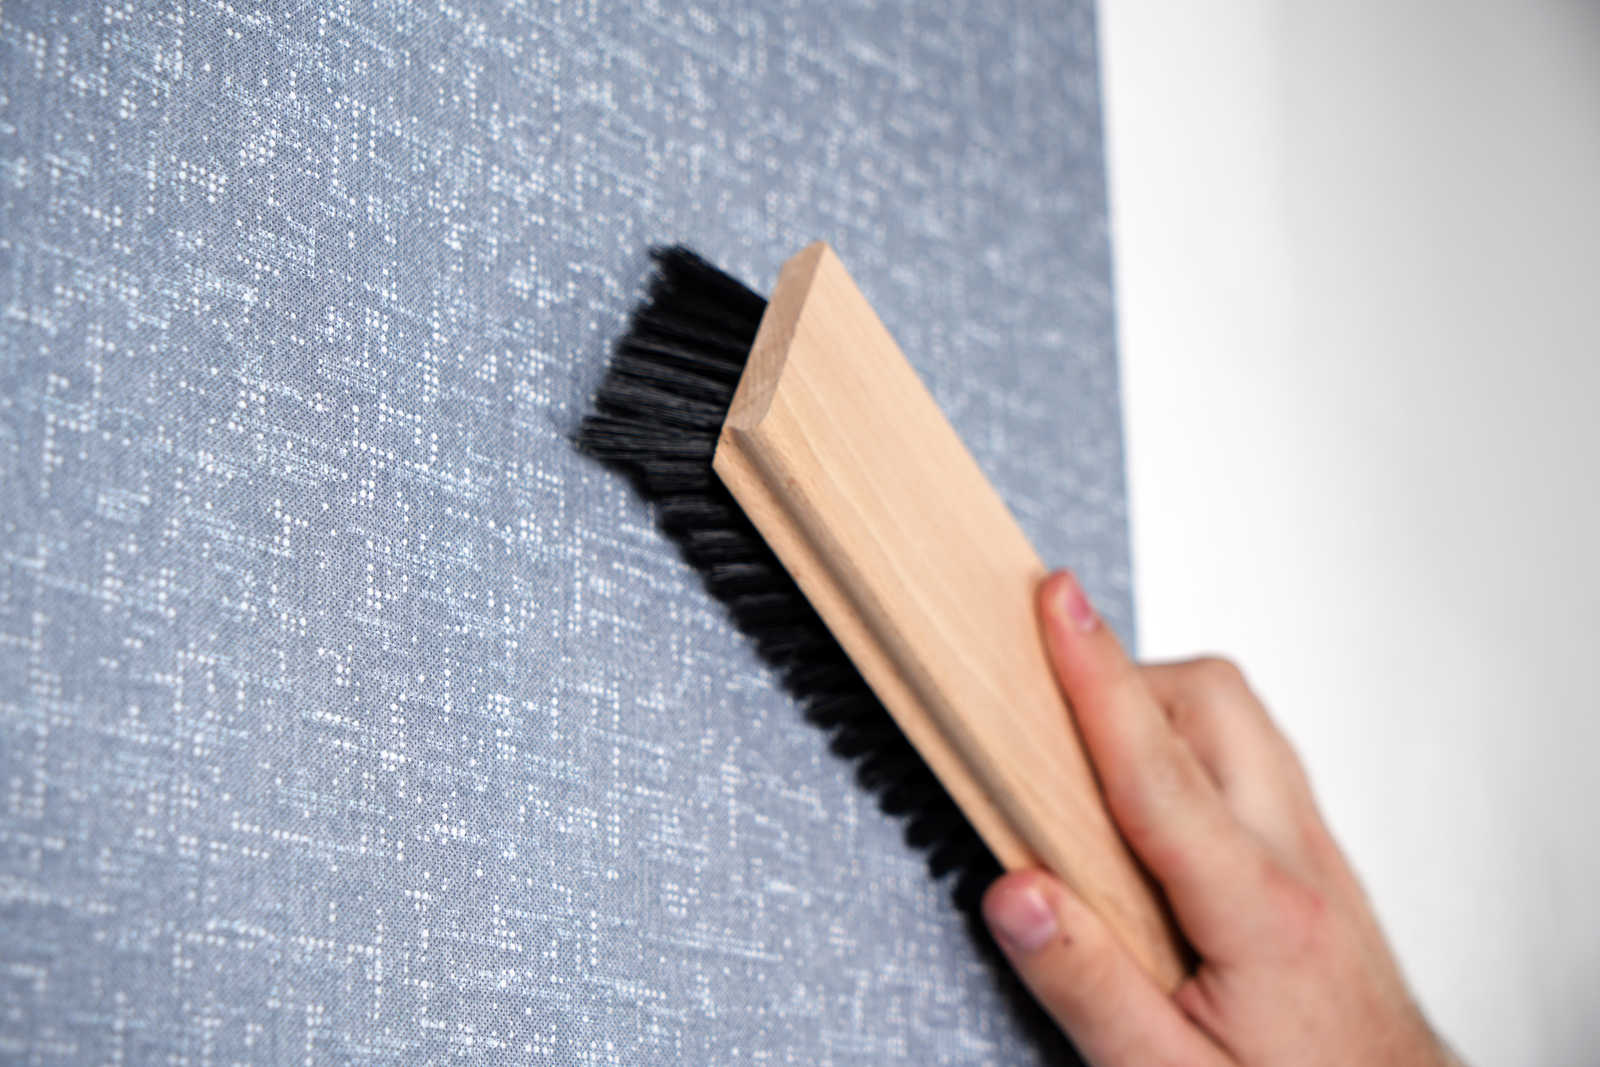             Cepillo para papel pintado 23,5cm x 6cm de madera con cerdas sintéticas
        